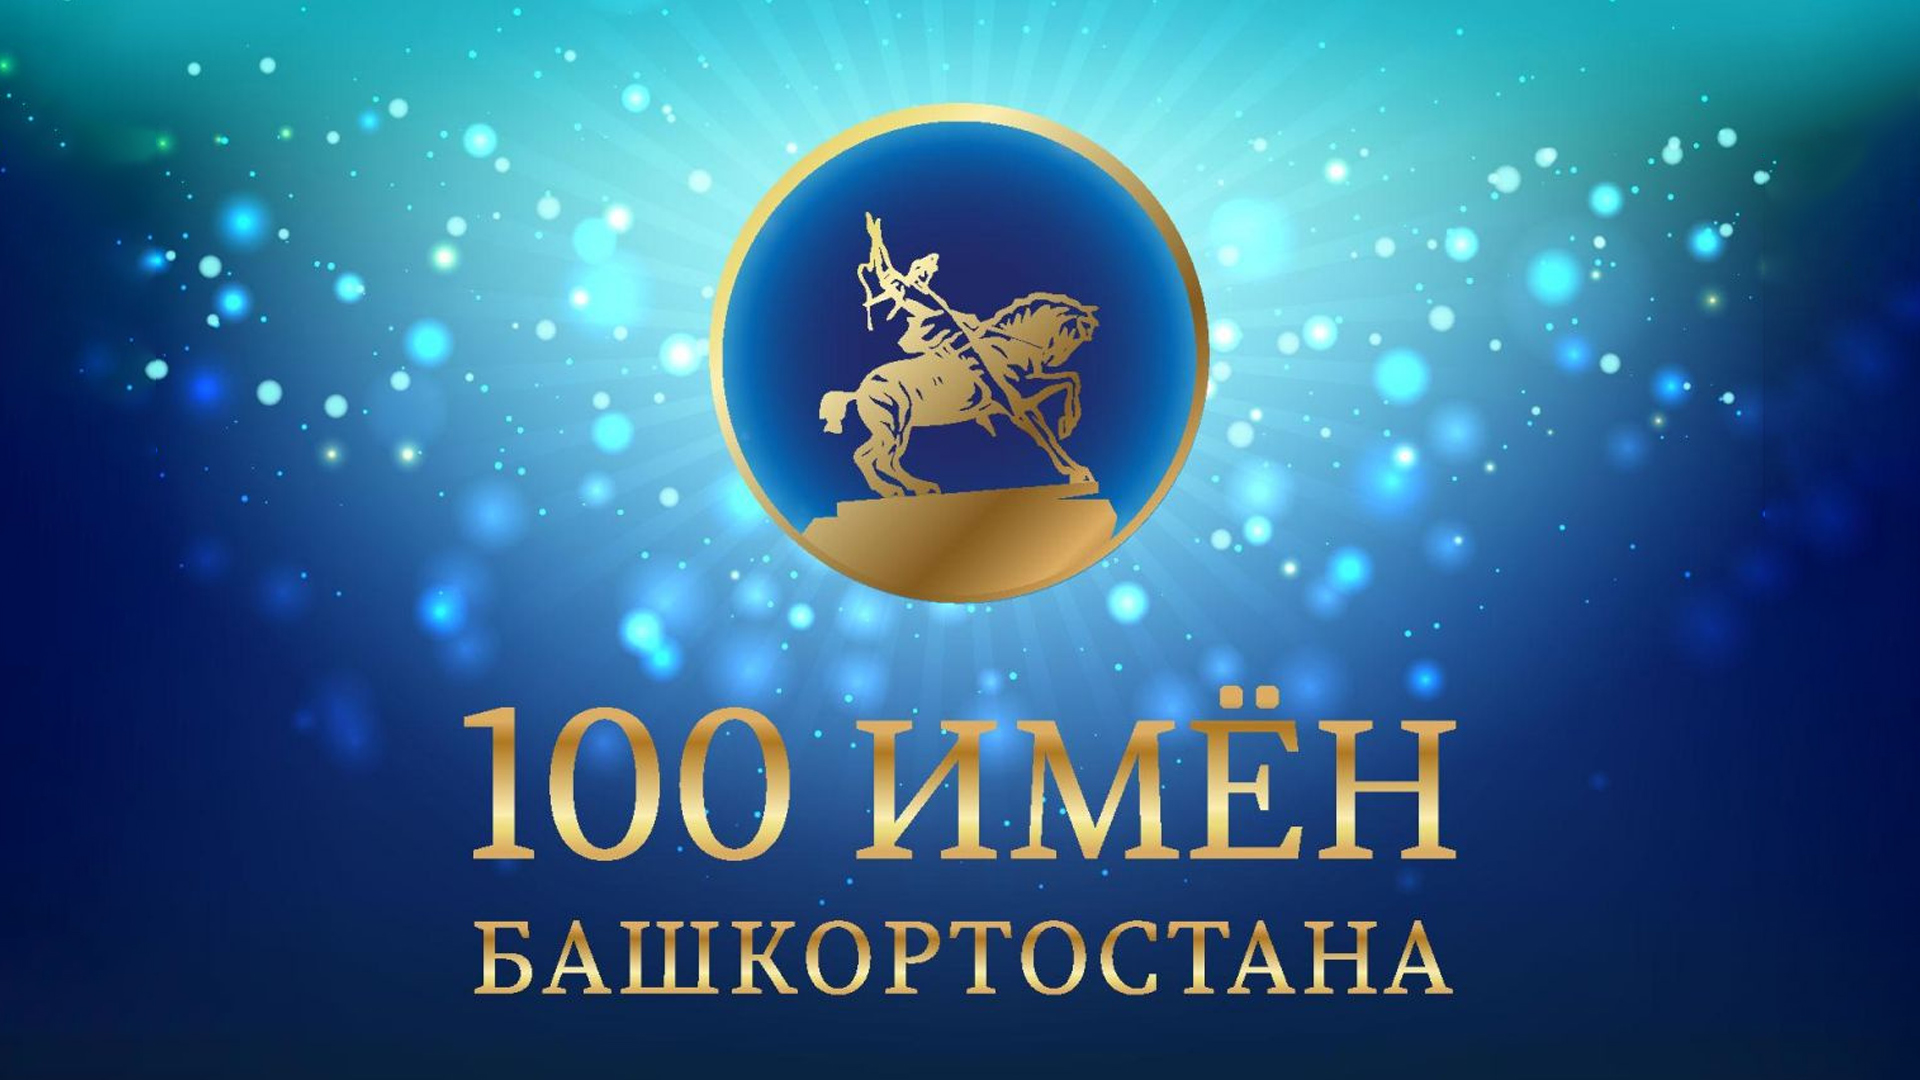 100 имён Башкортостана